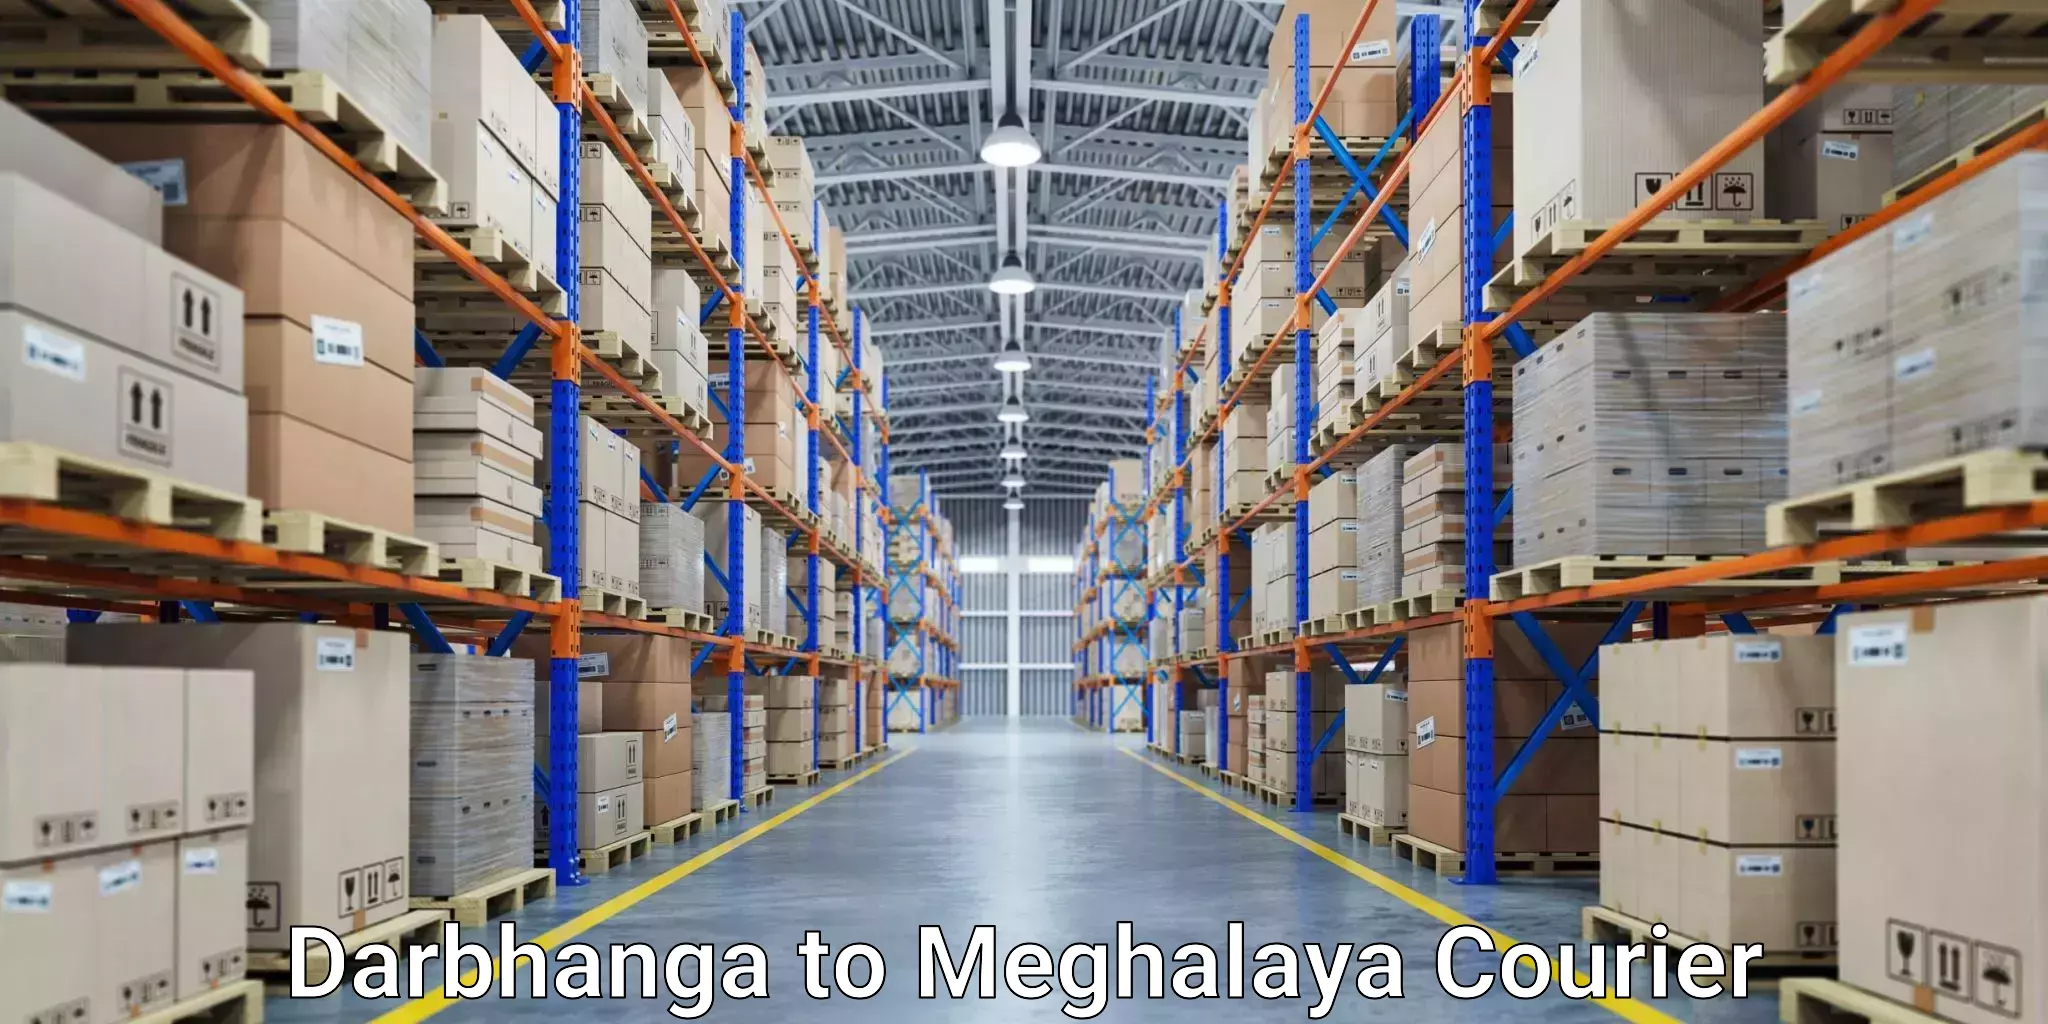 Cargo courier service Darbhanga to Shillong